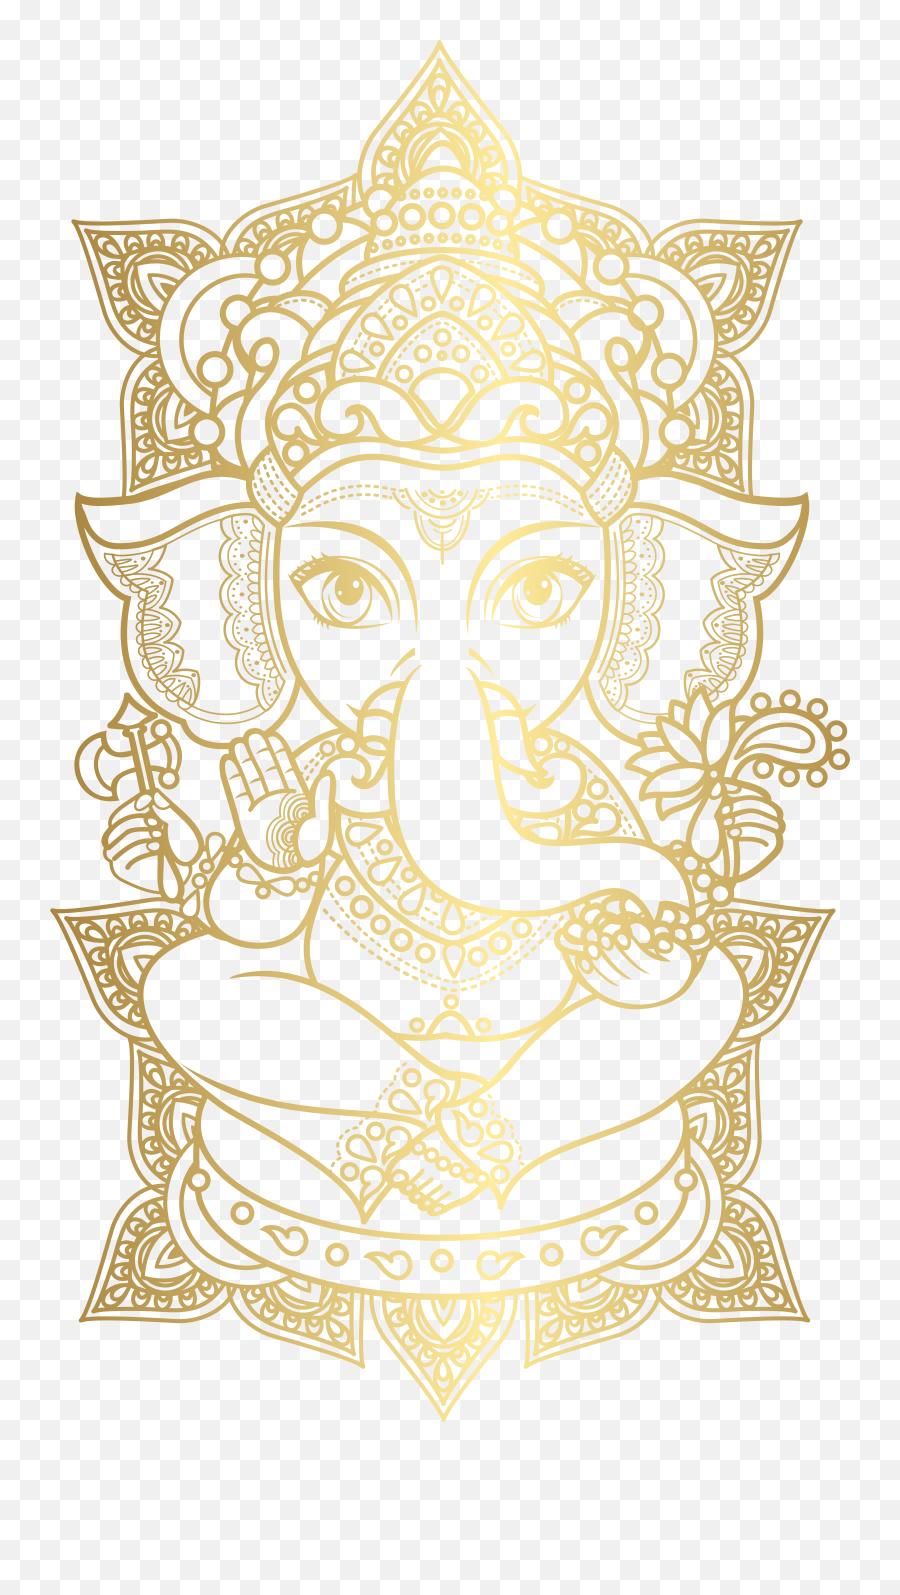 Gold Ganesha Png Clip Art Image In 2020 - Vector Lord Ganesh Png,Ganesha Png